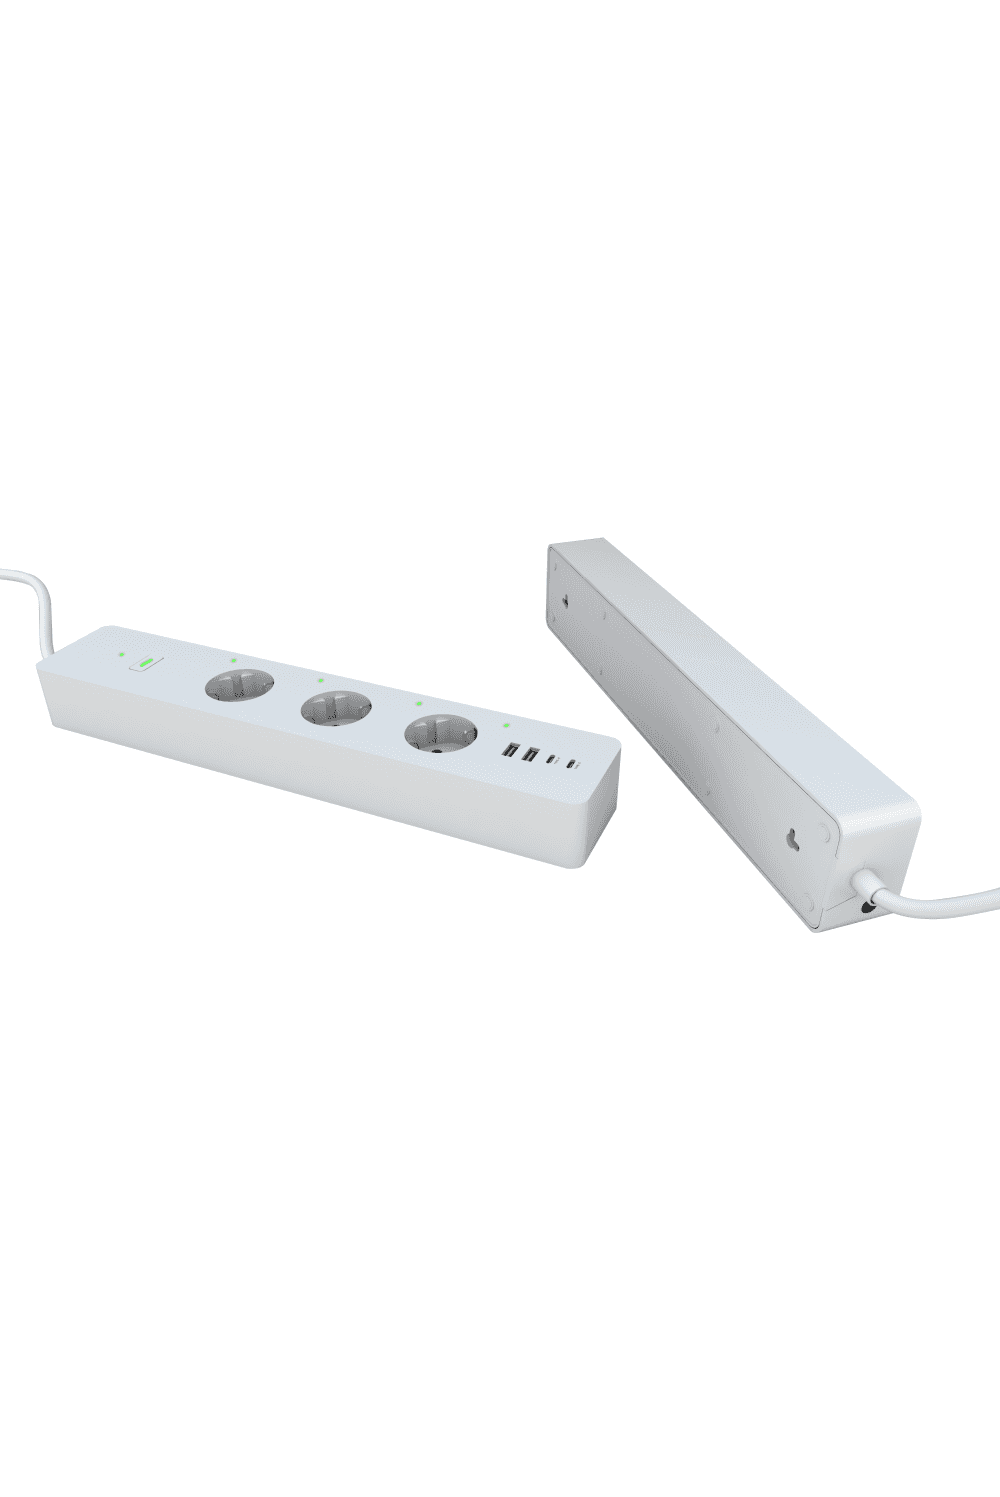 WOOX R6132 - slimme verlengkabel met 3 Schuko stopcontacten en 4 USB-poorten